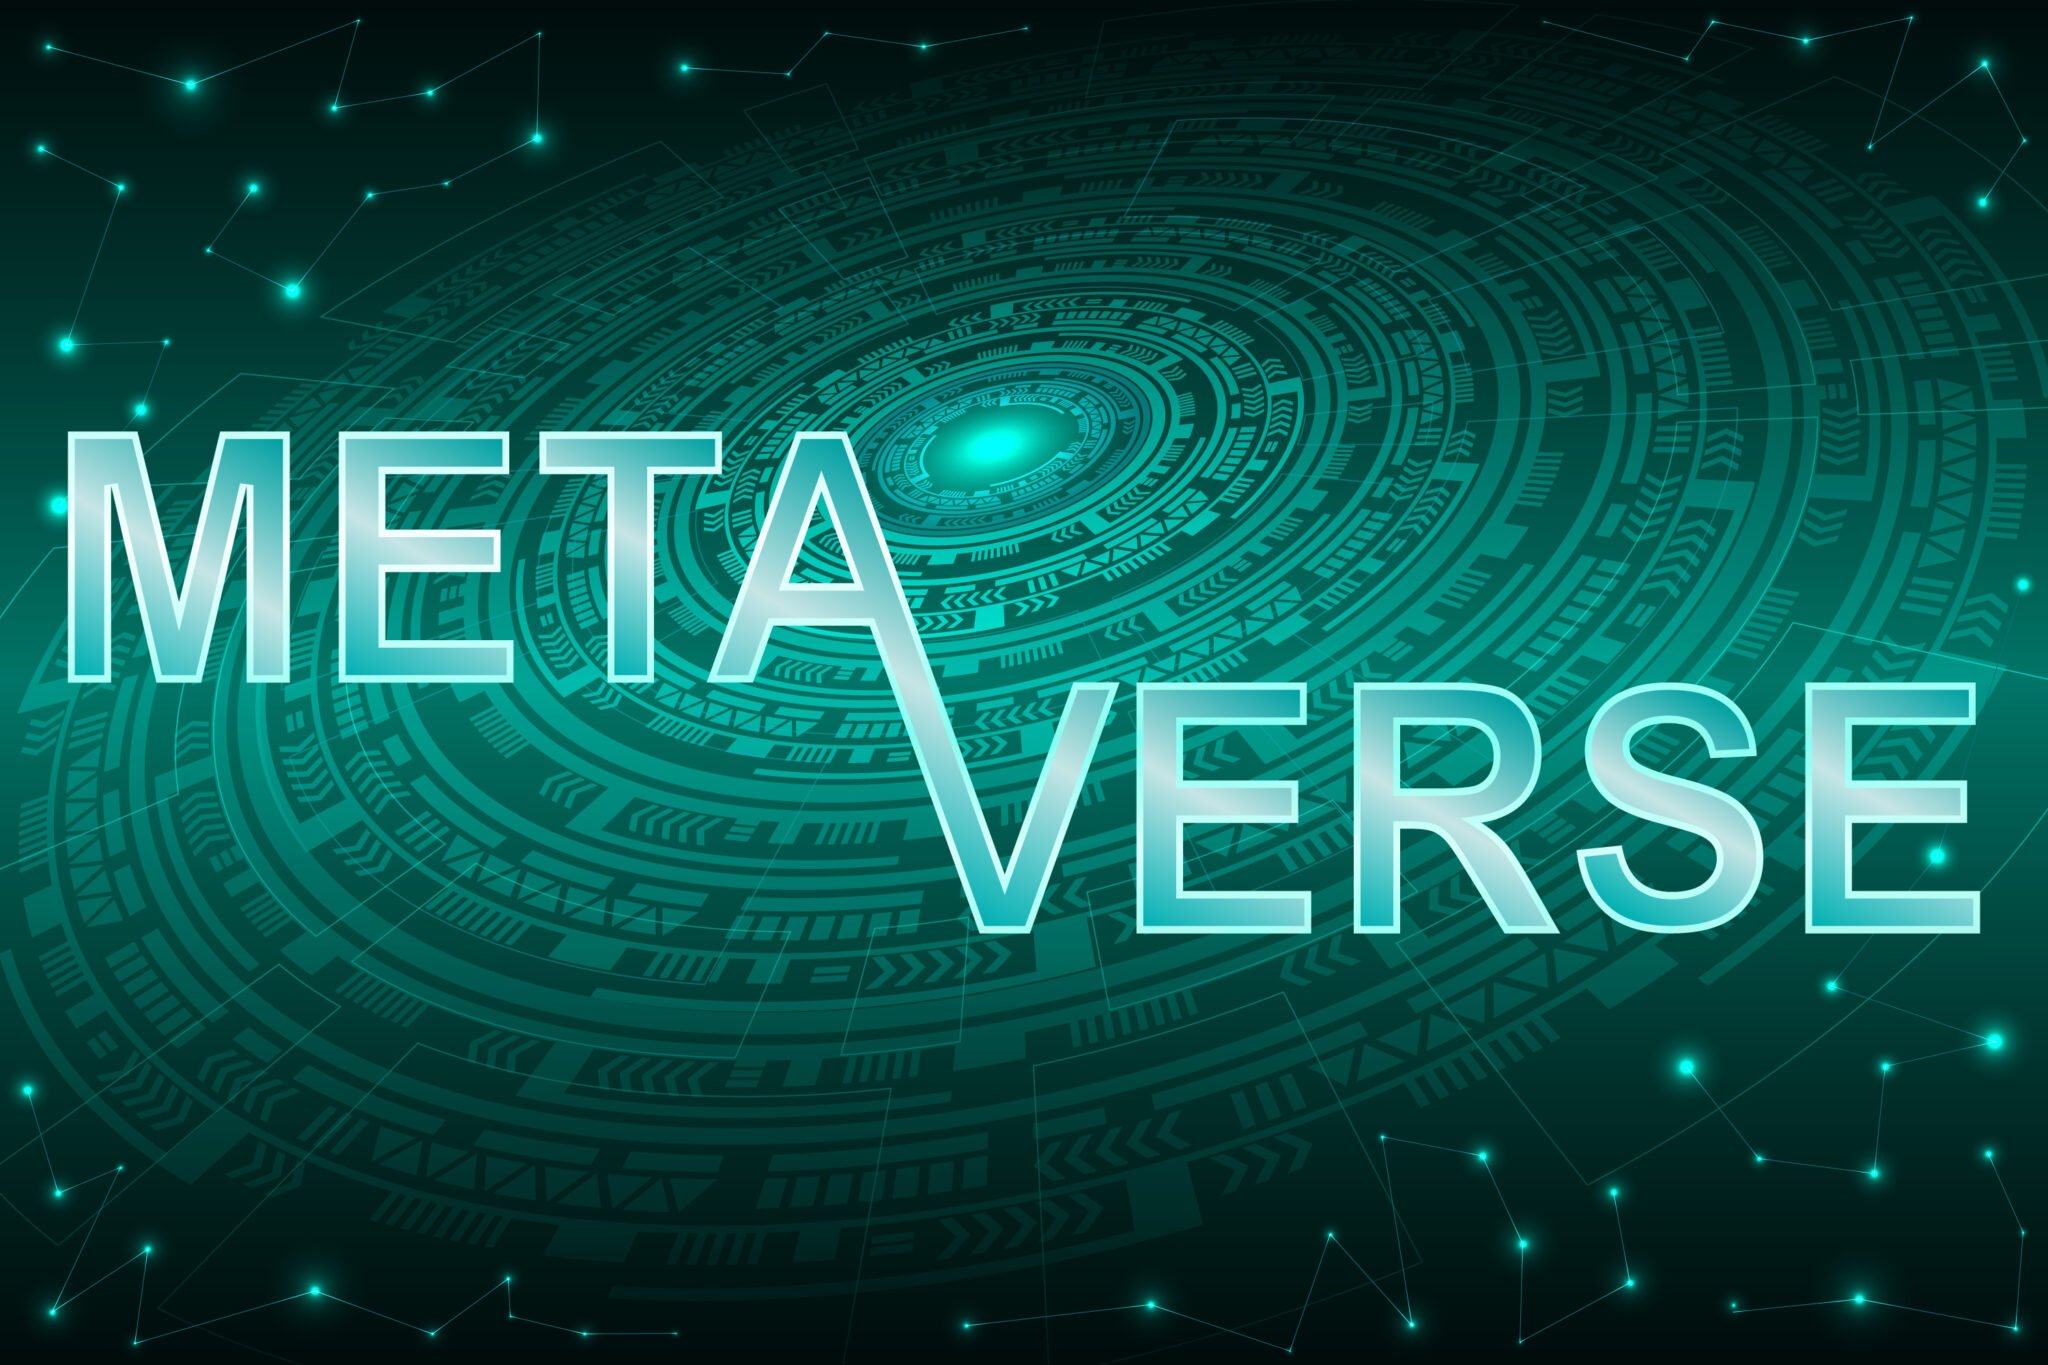 Metaverse-Textdesign auf abstraktem und futuristischem grünem Hintergrund.  Metaverse, Virtual Reality, Augmented Reality und Blockchain-Technologie, 3D-Benutzeroberflächenerfahrung.